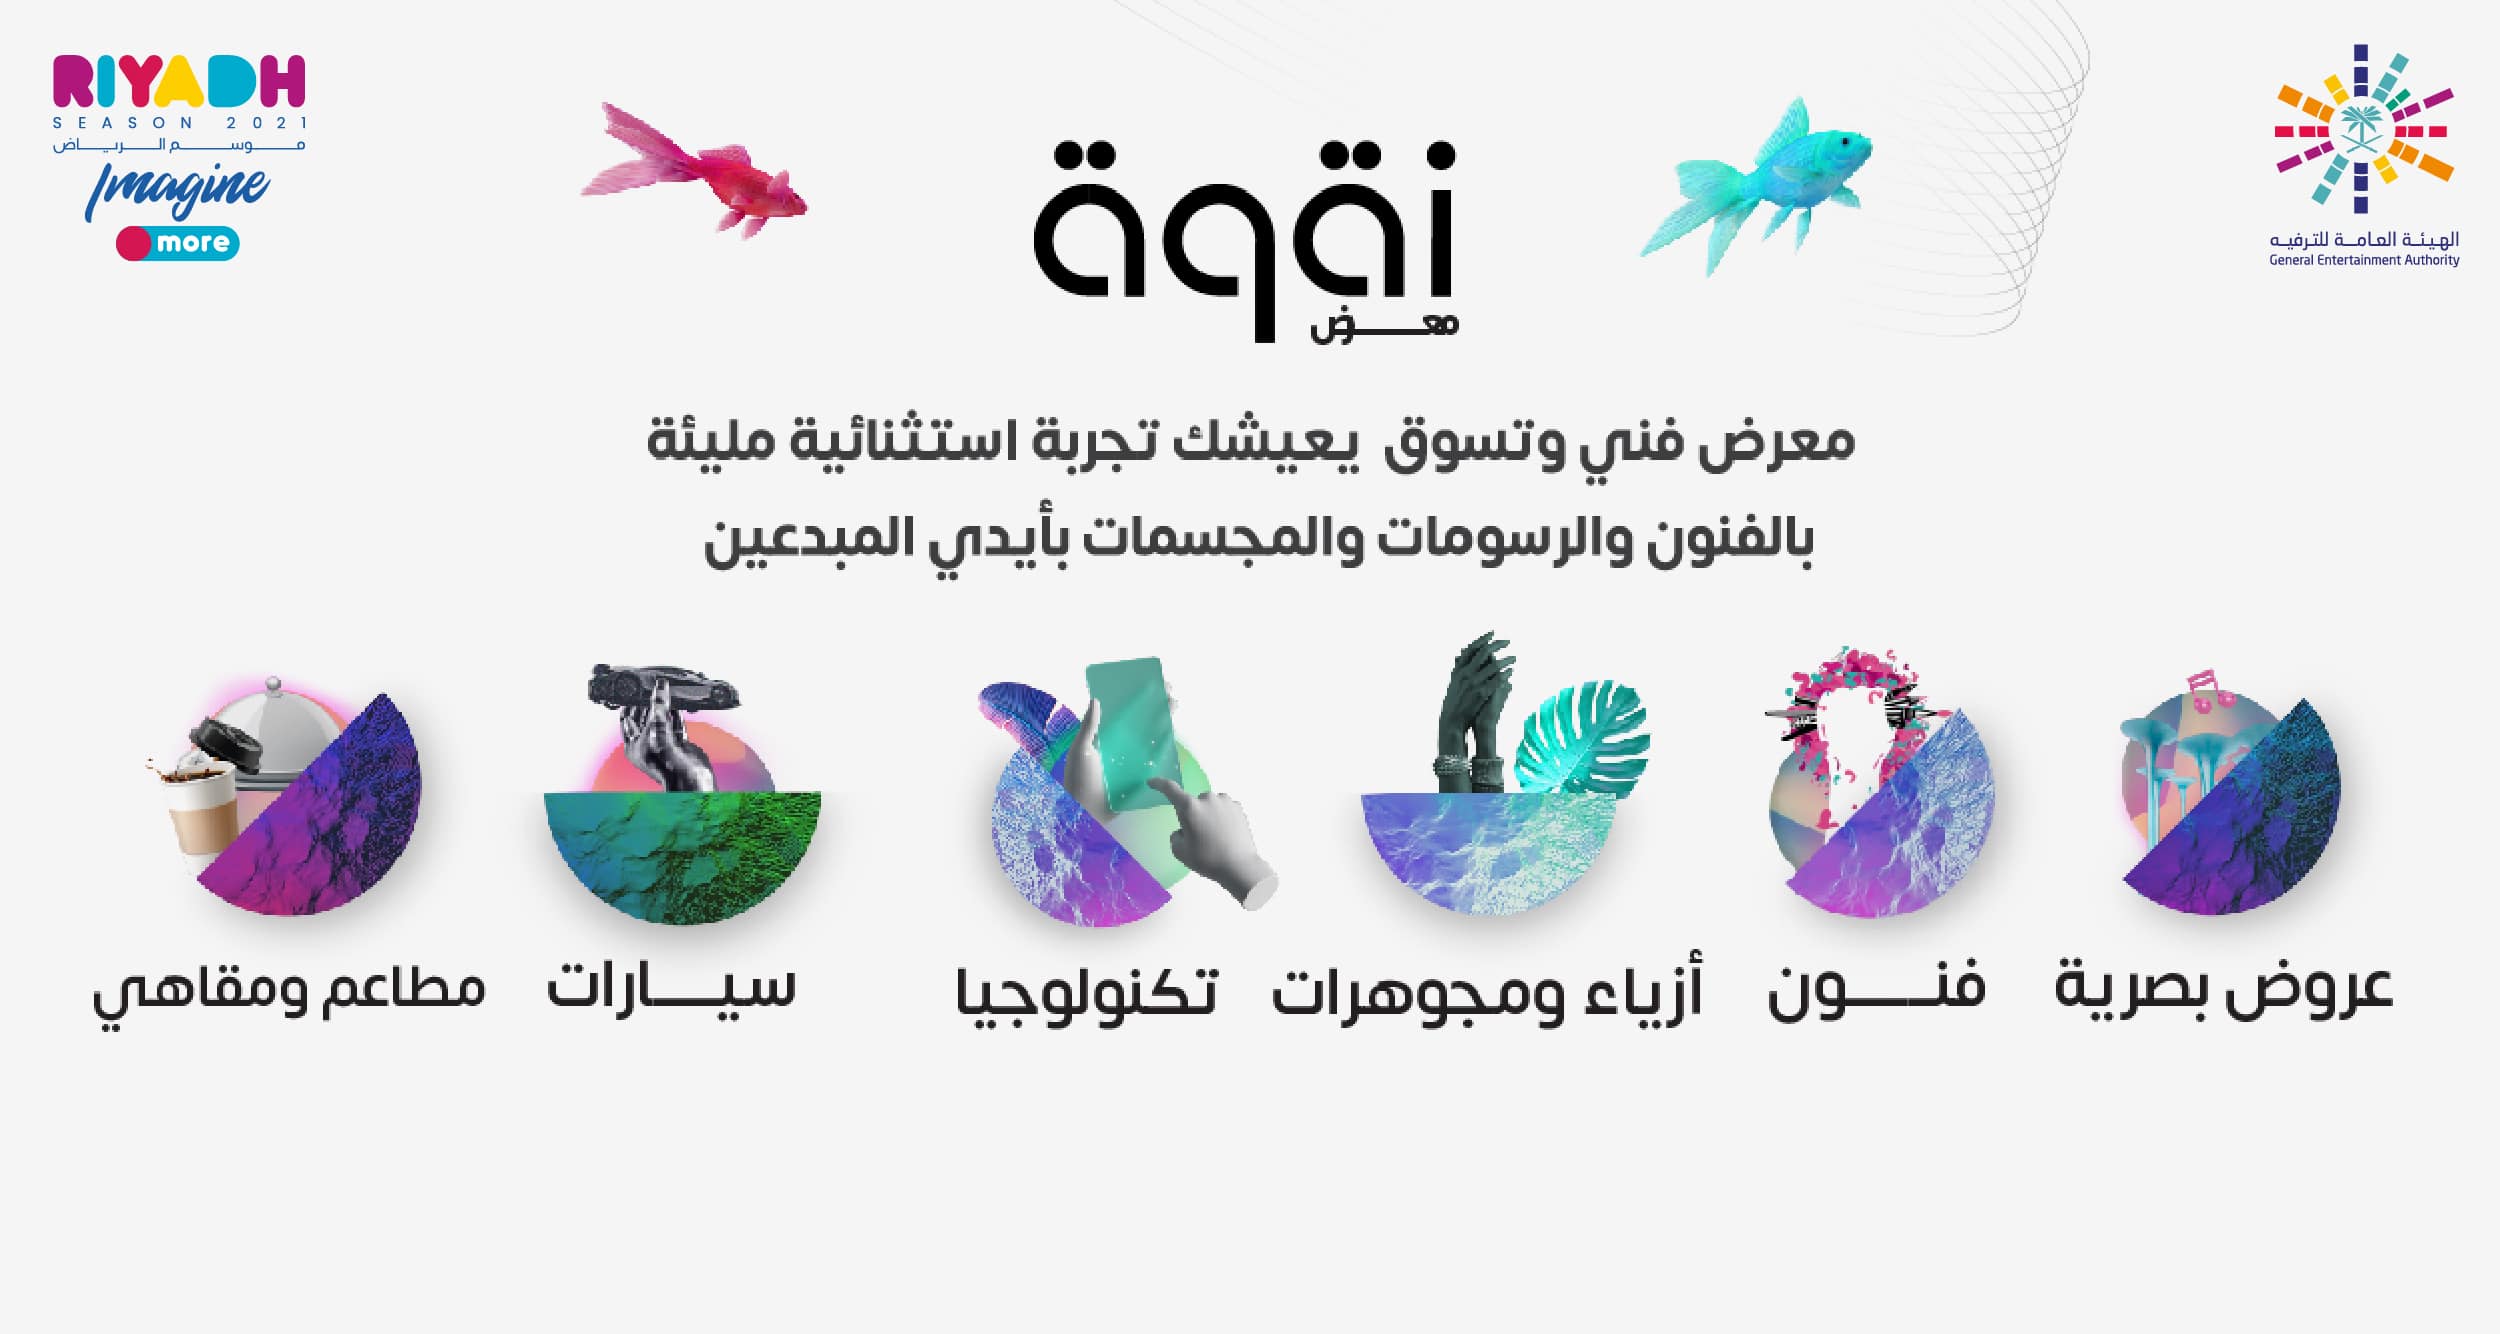 موسم الرياض يستعد لافتتاح معرض “نقوة” لتقديم صفوة المنتجات العالمية بأساليب عرض تكنولوجية تفاعلية